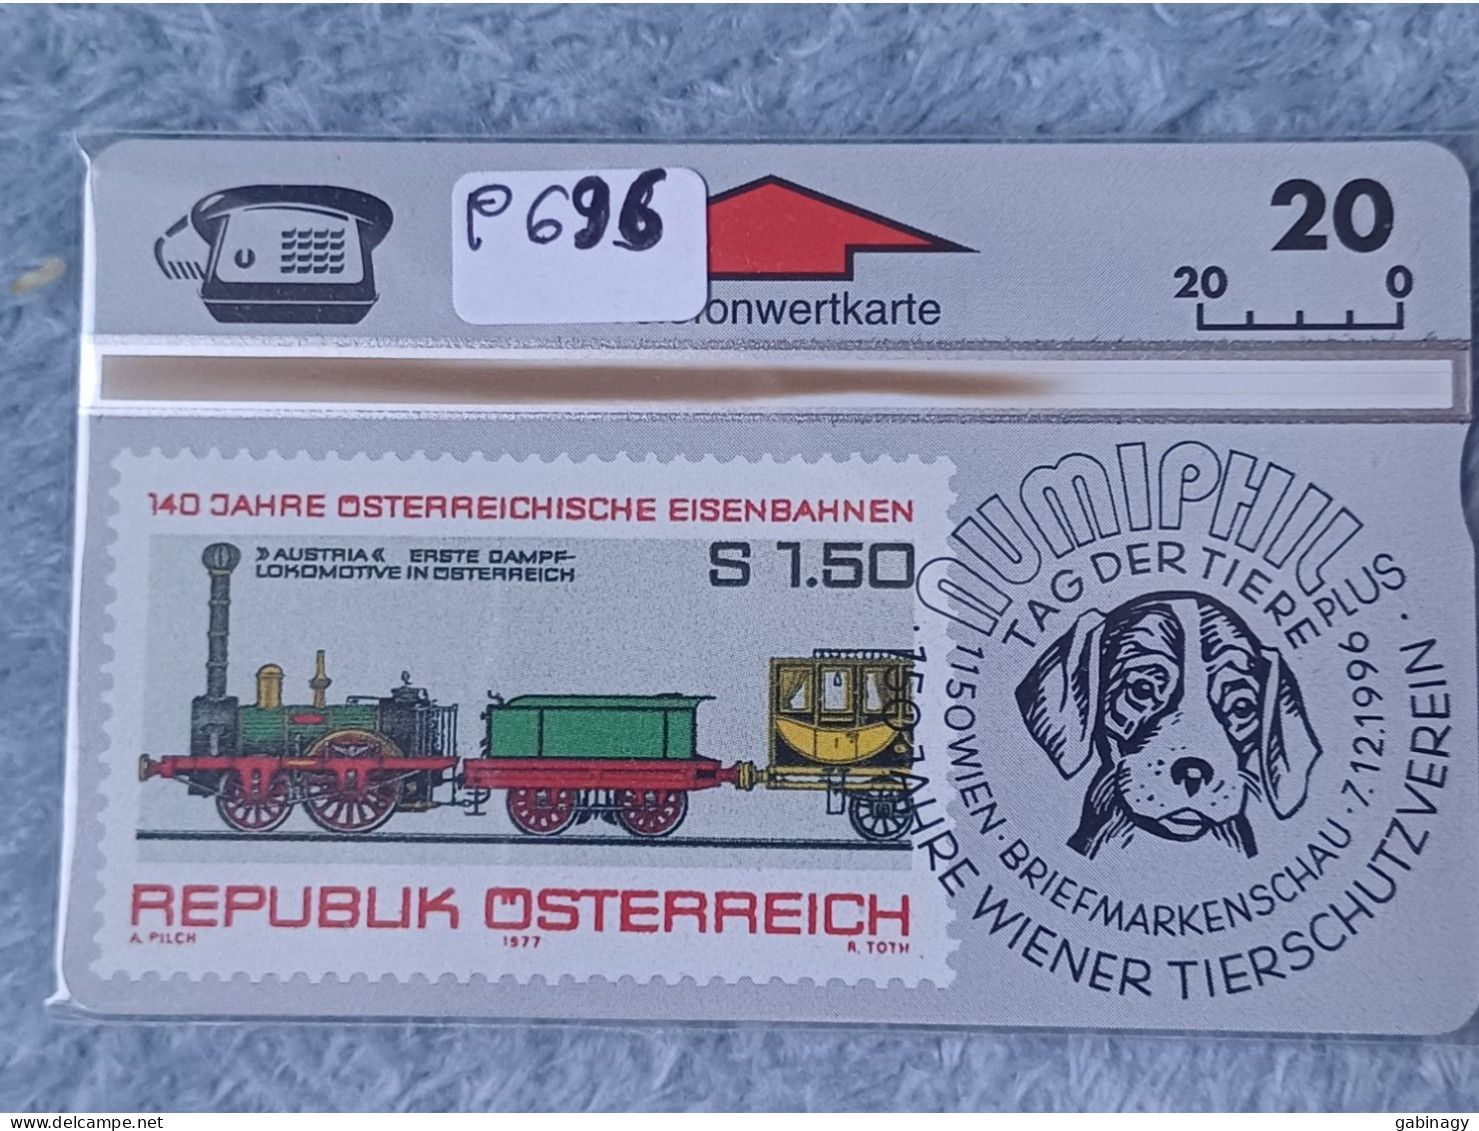 TRAIN - AUSTRIA - P696 - STAMP - DOG - NUMIPHIL - KRUGERRAND COIN - Eisenbahnen